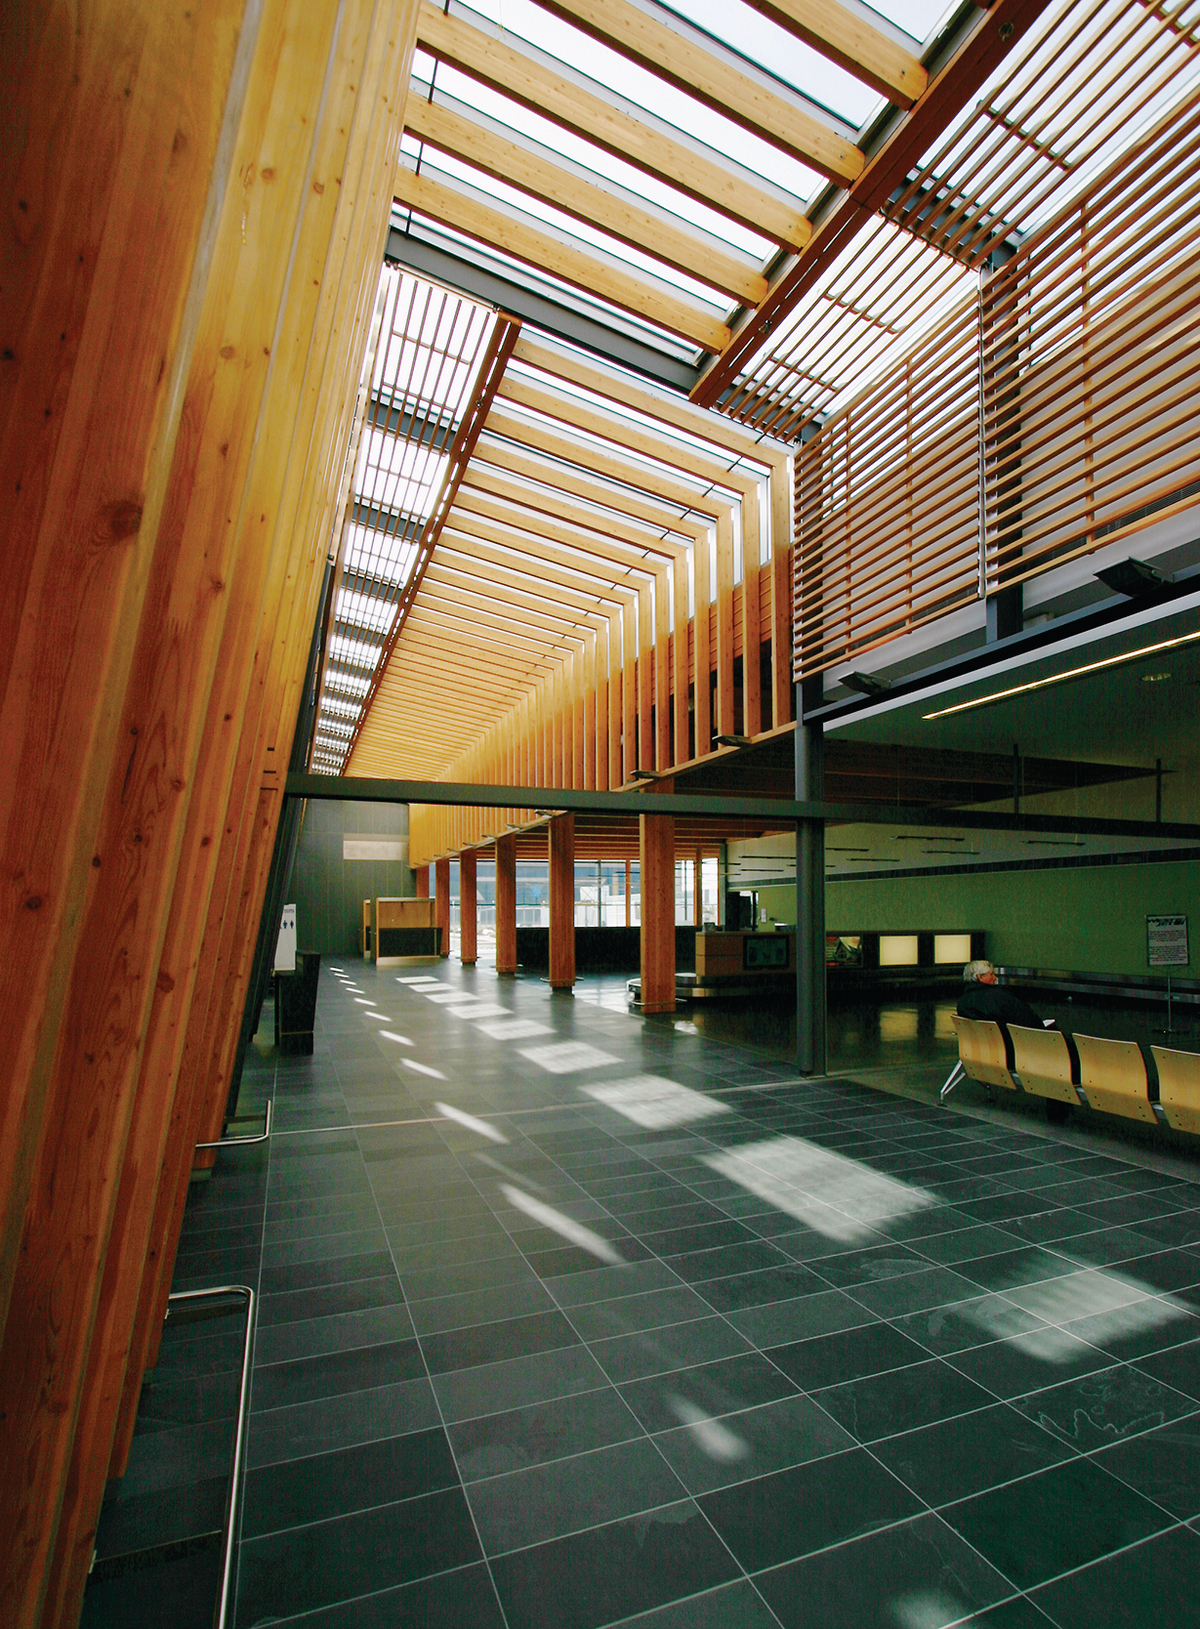 乔治王子机场扩建的低层建筑的室内白天视图，展示了胶合层压木材(胶合木)的梁和柱与艺术尺寸的木材板混合在一起